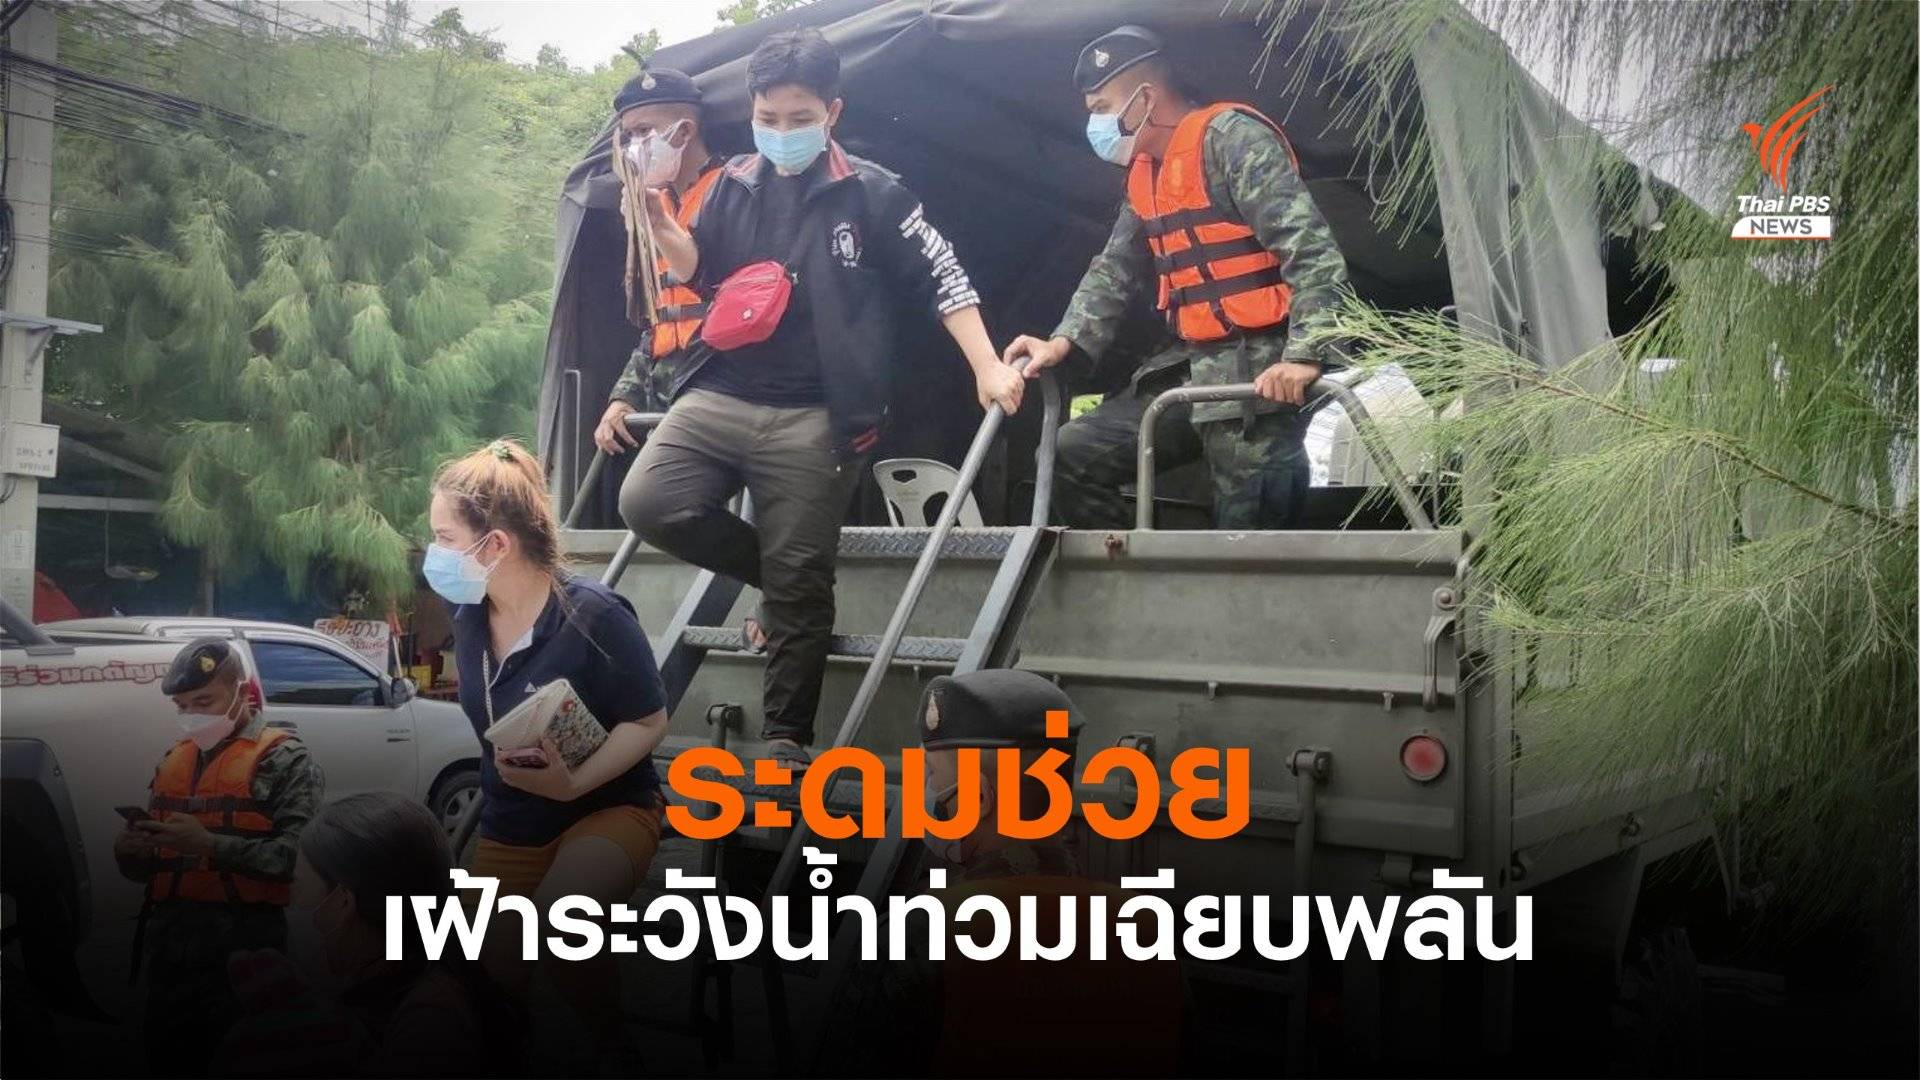 รัฐบาล-ทหาร เร่งช่วยชาวบ้านน้ำท่วม 4 อำเภอ ในสมุทรปราการ